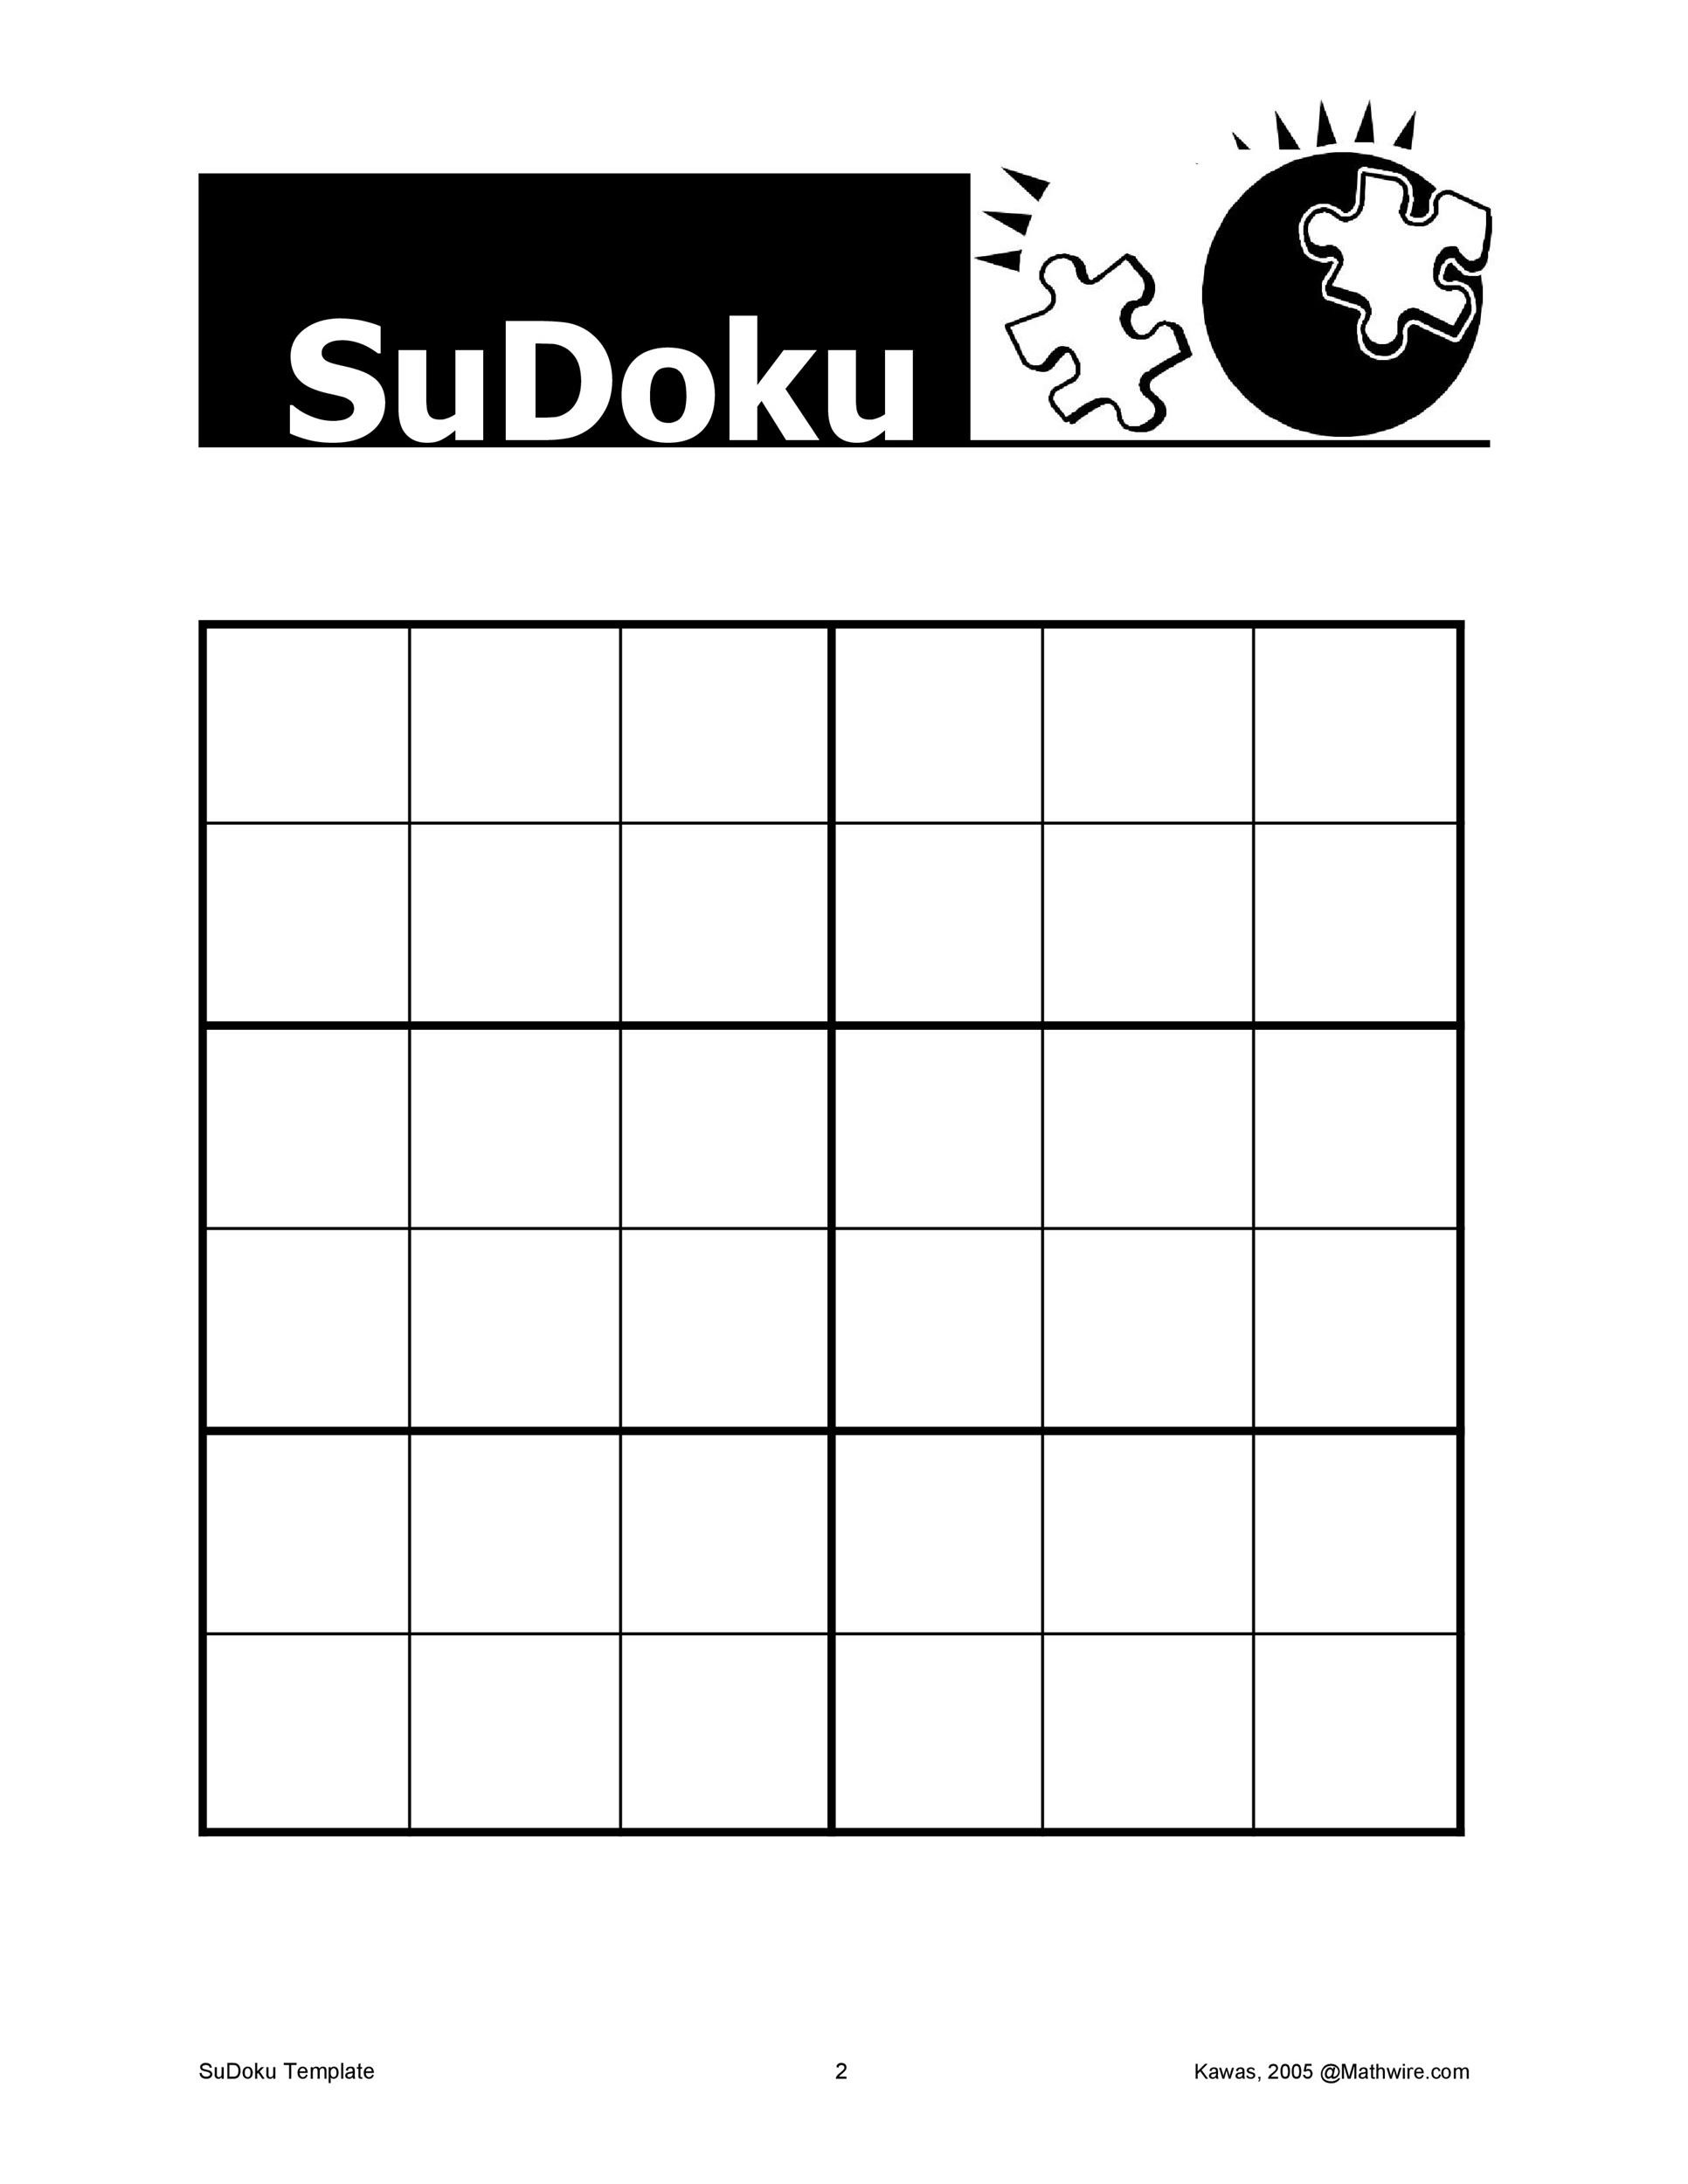 sudoku-template-printable-printable-word-searches